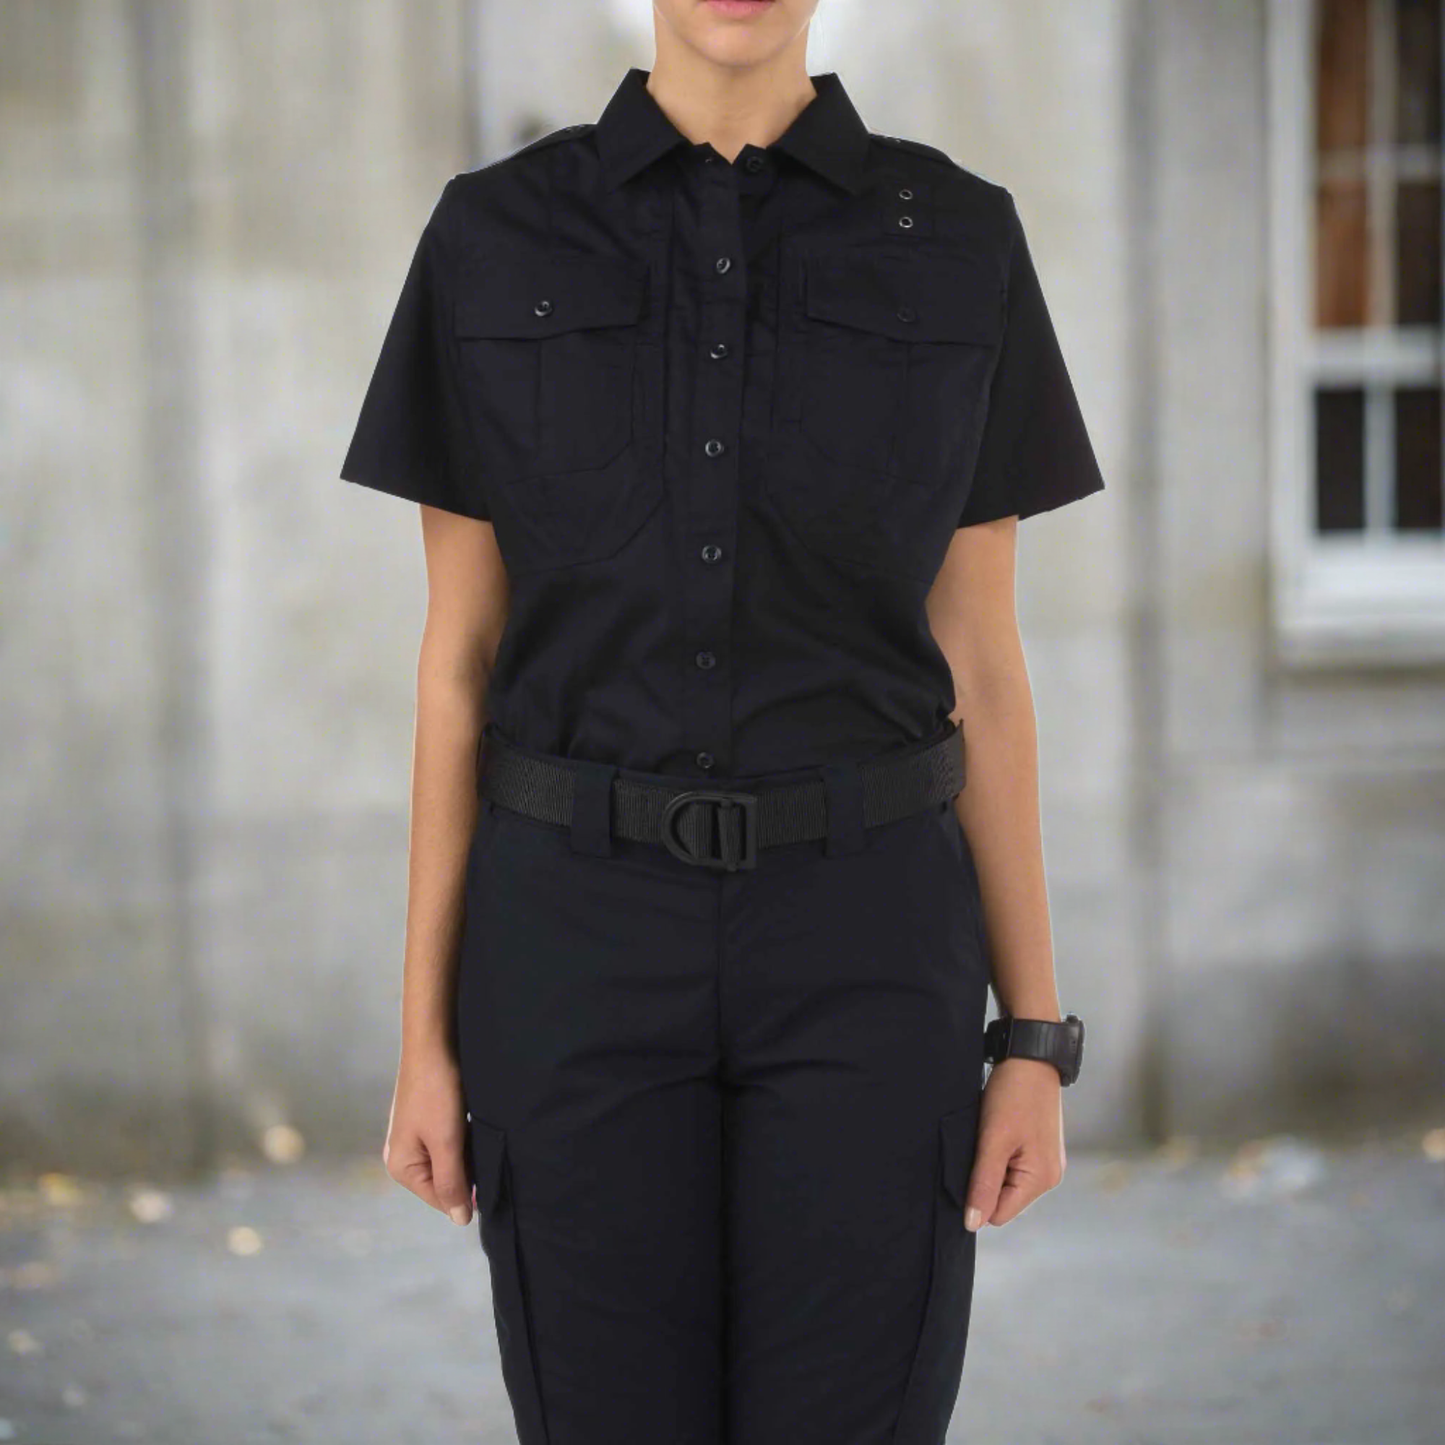 5.11 Tactical Women’s Taclite PDU Class B Short Sleeve Shirt